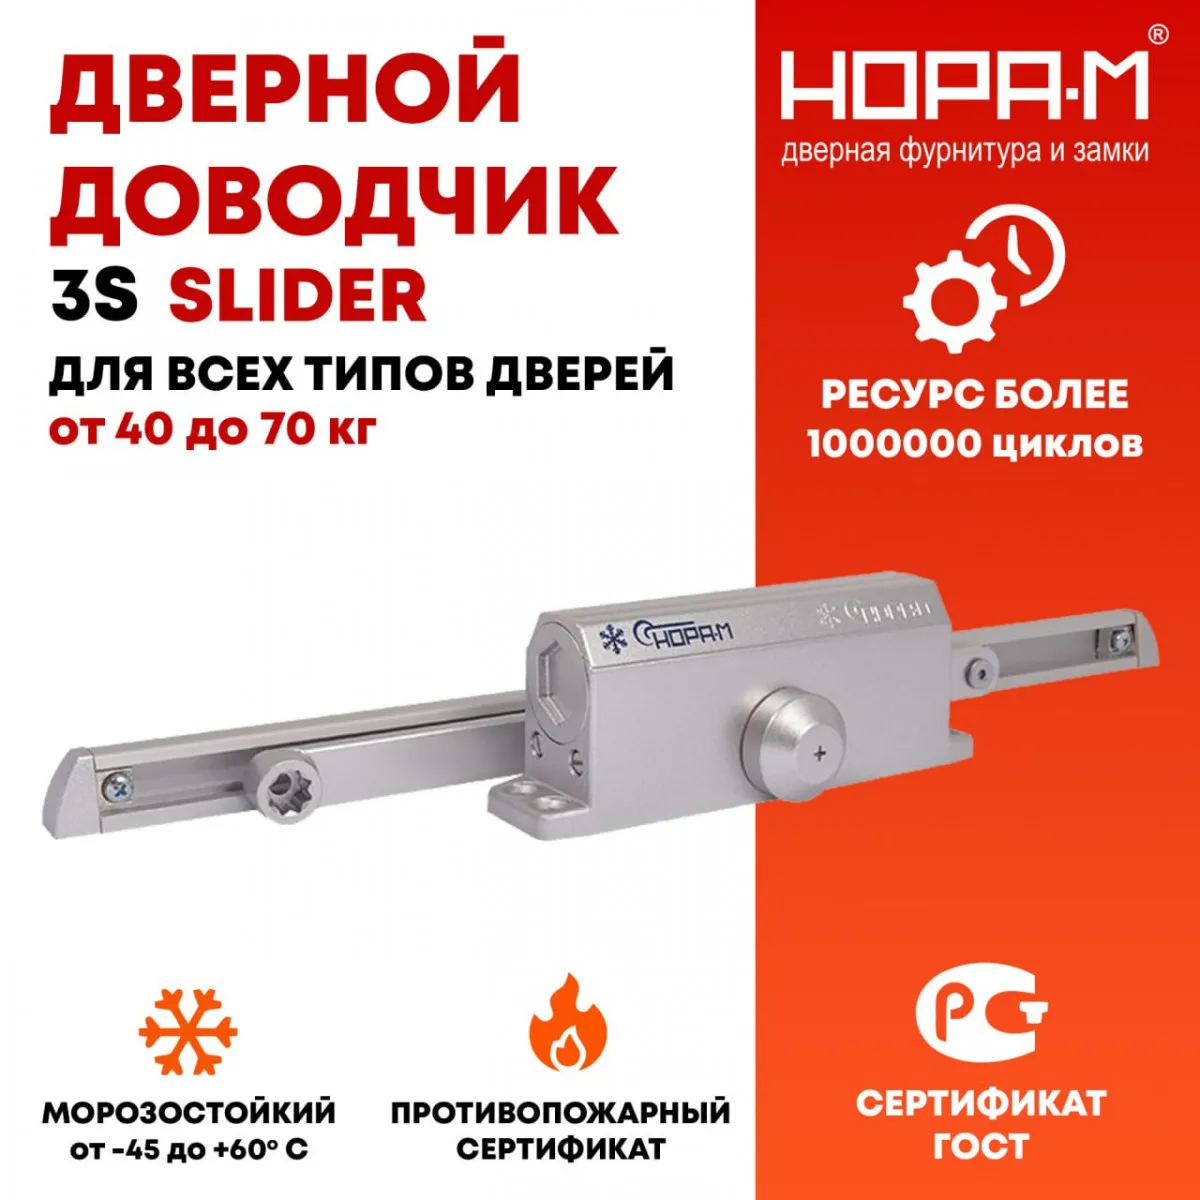 NORA-M kompaniyasidan 40 dan 70 kg gacha bo'lgan 3S Slider toymasin tayoqli eshikni yopishtiruvchi#1